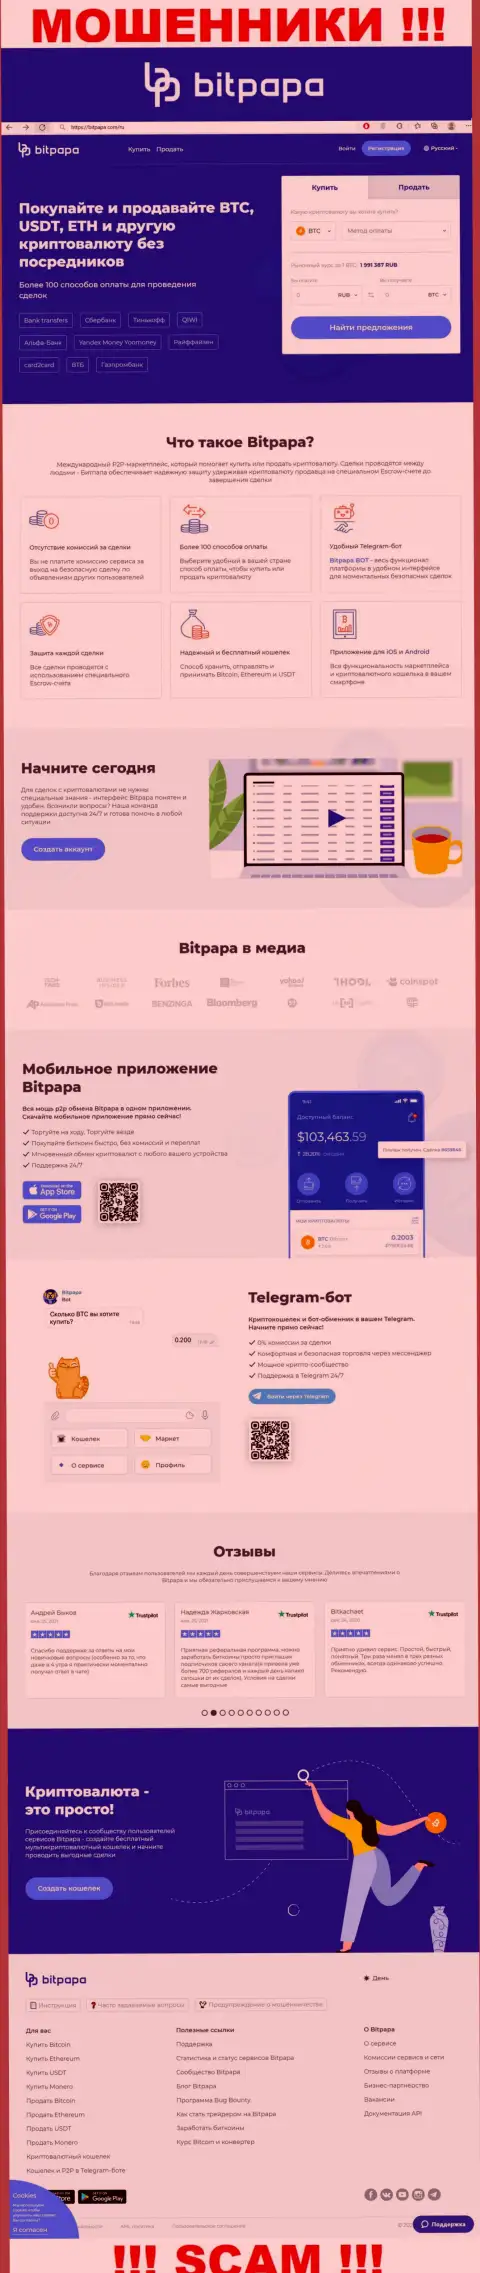 Фейковая информация от конторы БитПапа на официальном веб-сайте мошенников